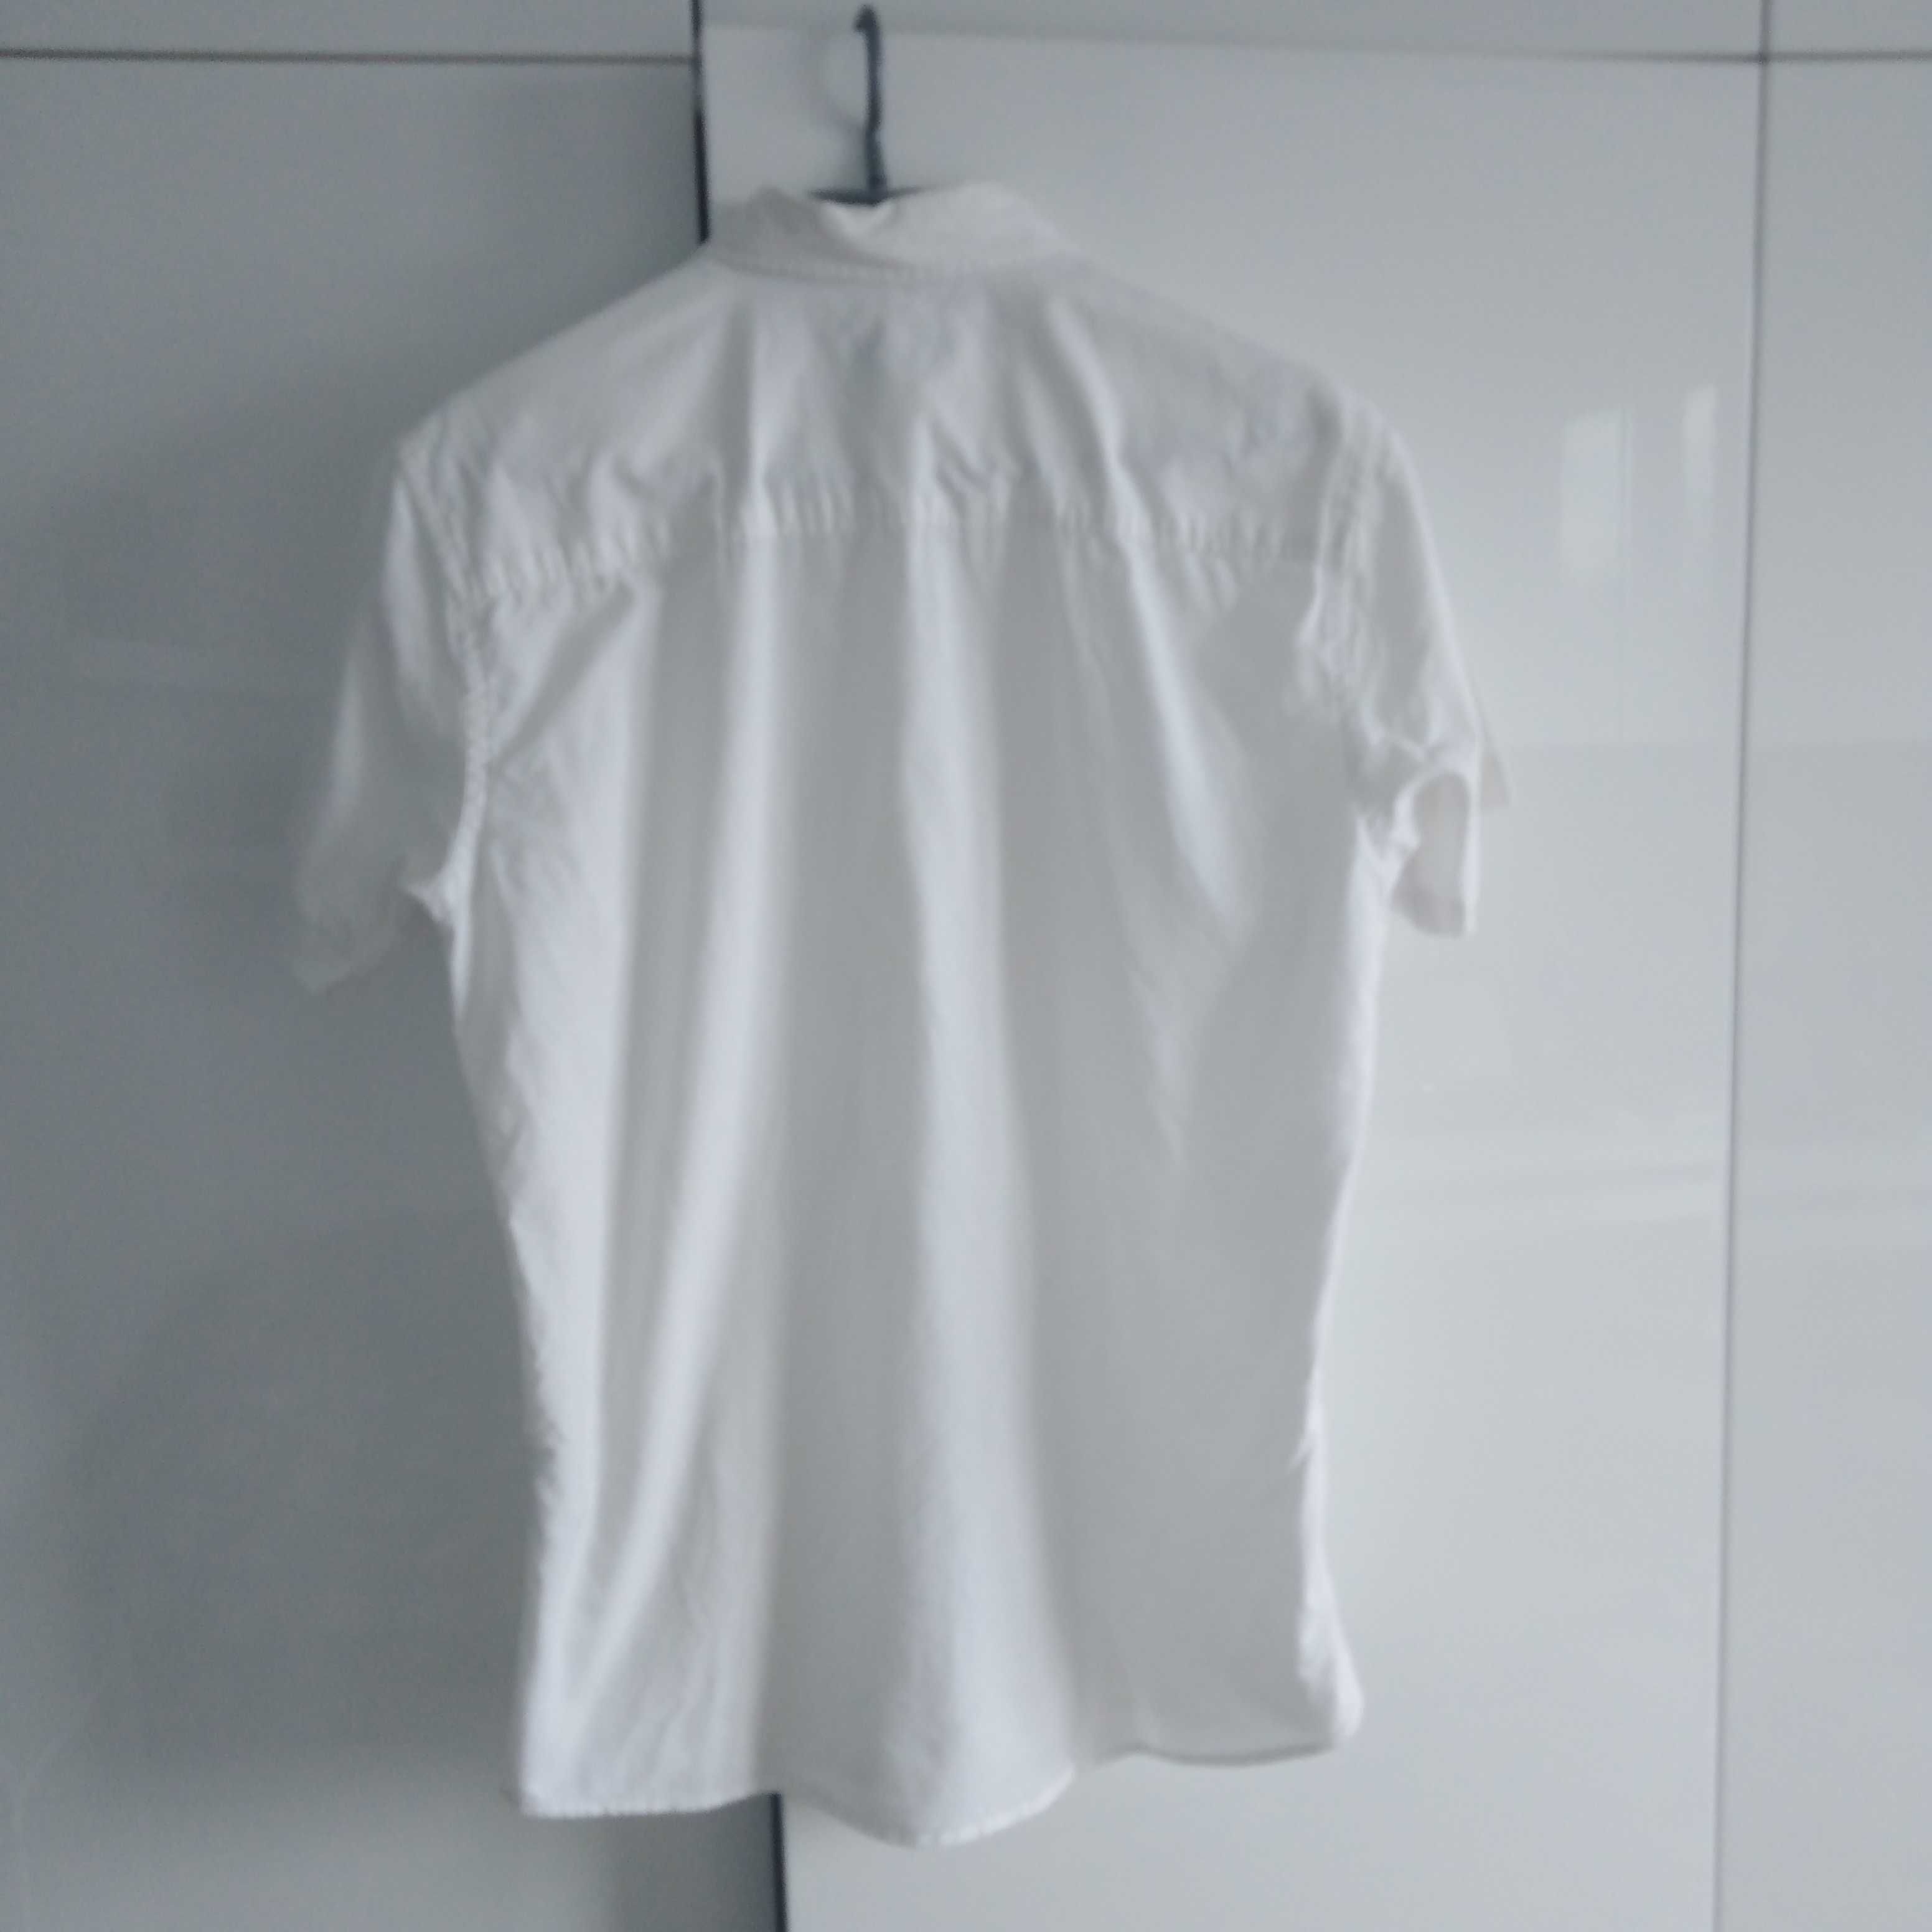 Koszula bawełniana rozpinana  z krótkim rękawem rozmiar S